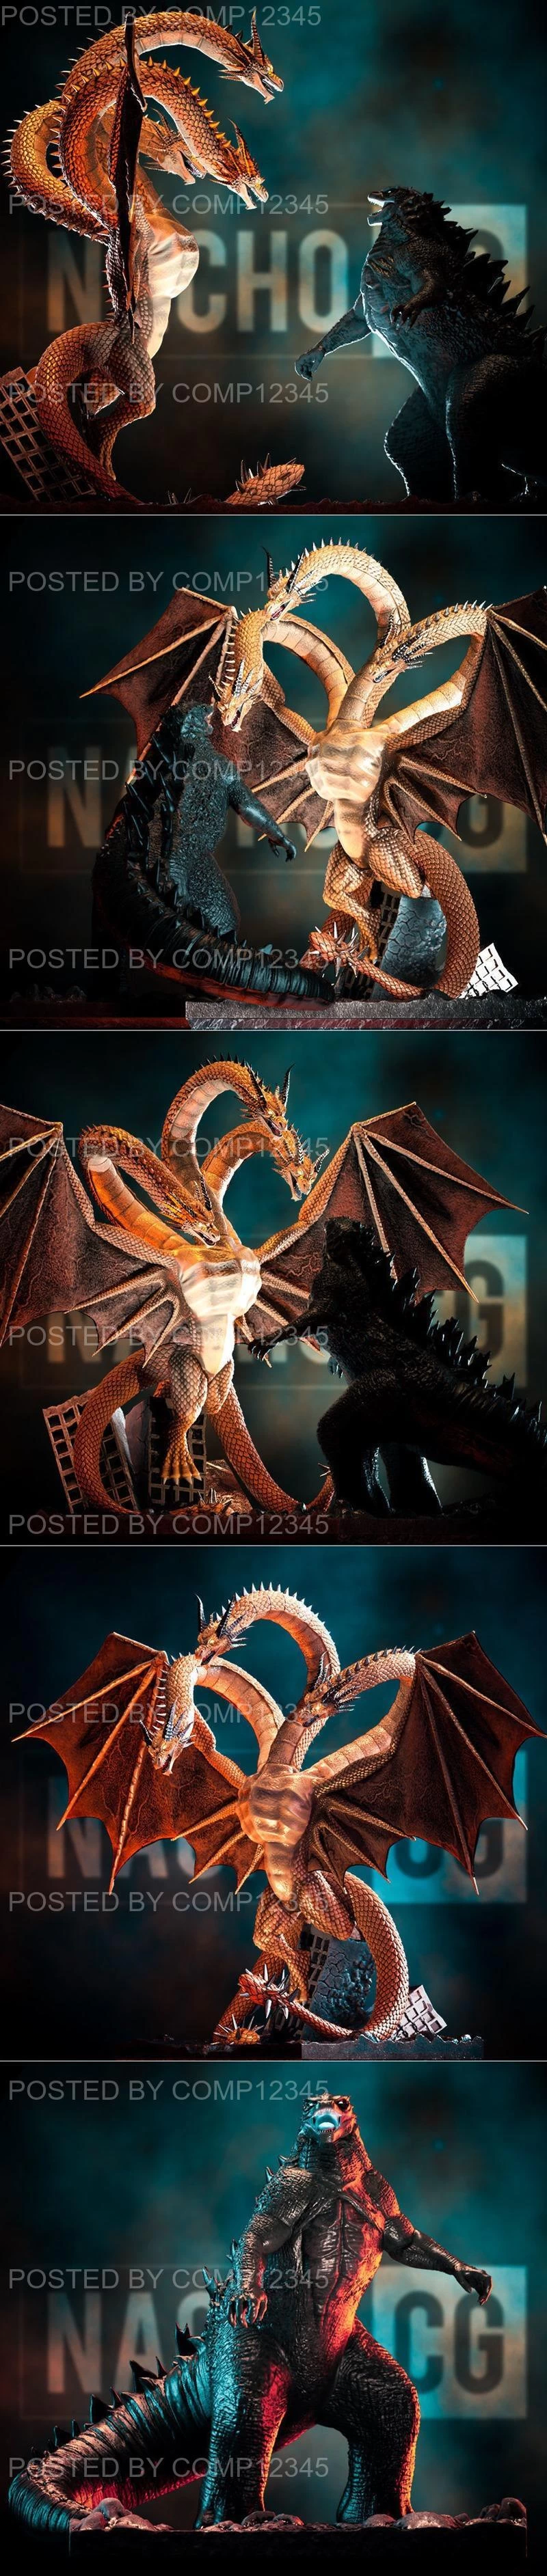 Fan Art - Godzilla Vs King Ghidorah Statue and Diorama 3D Print